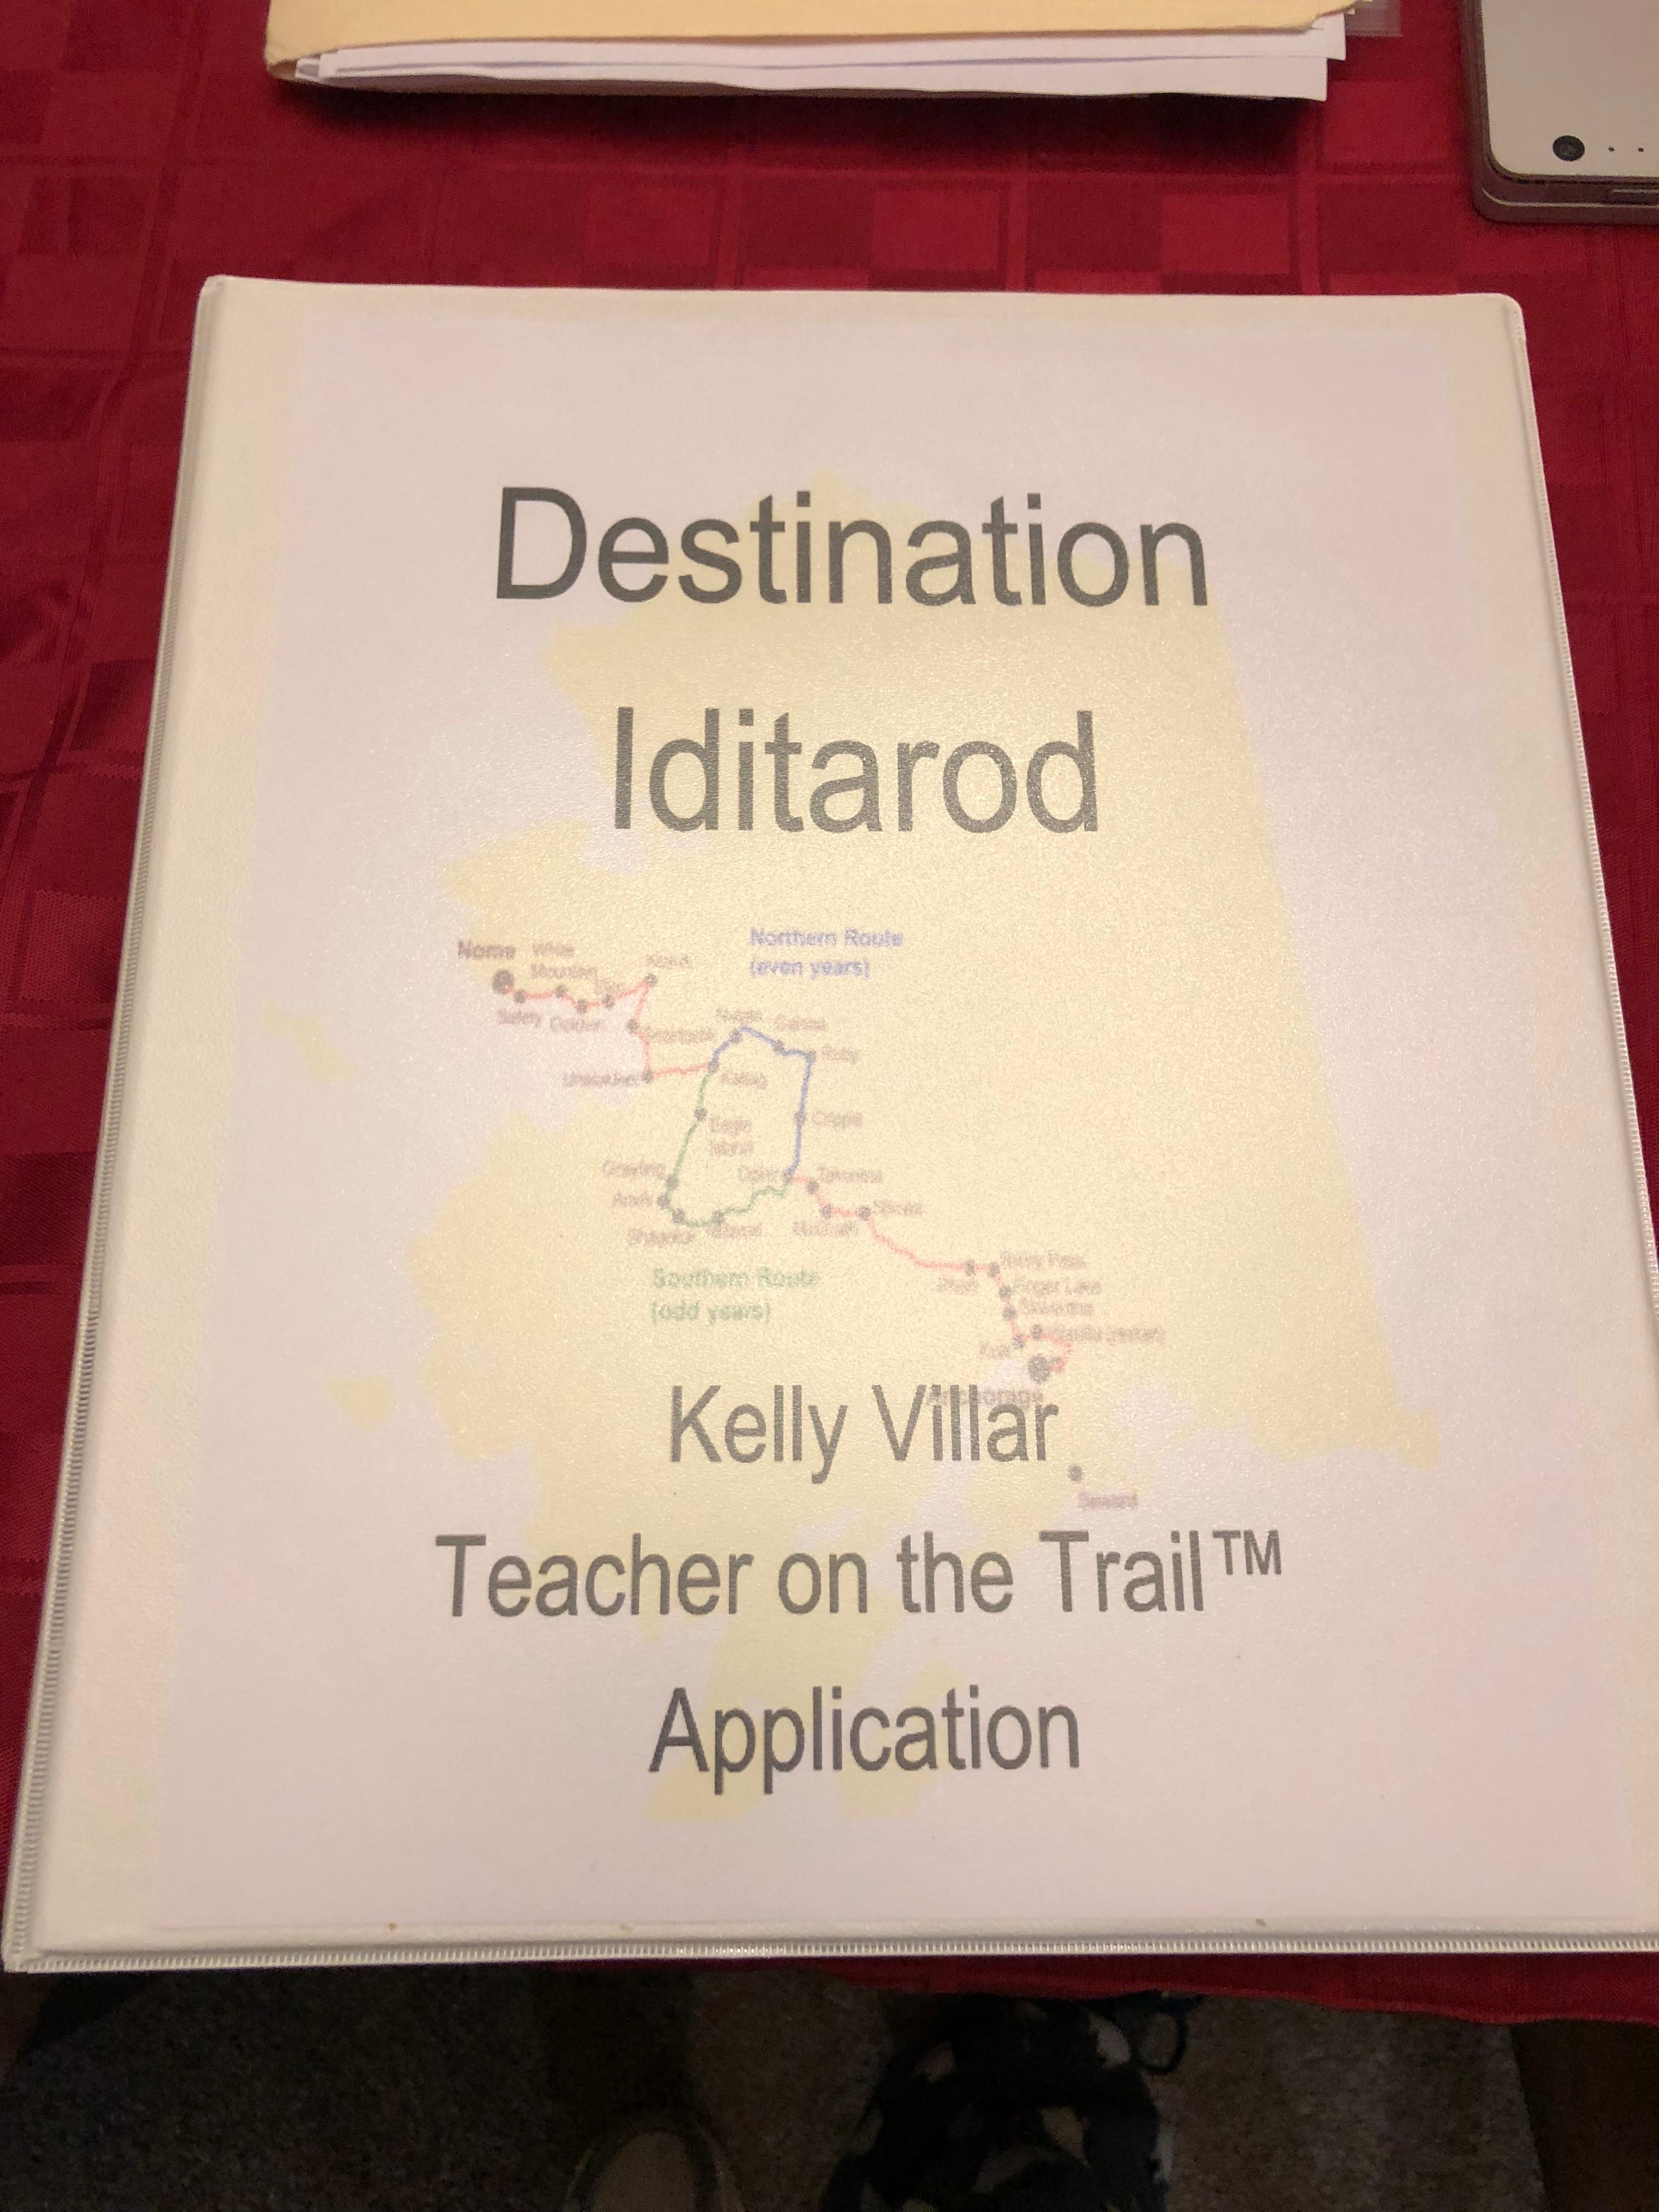 Kelly Villar's application in a binder